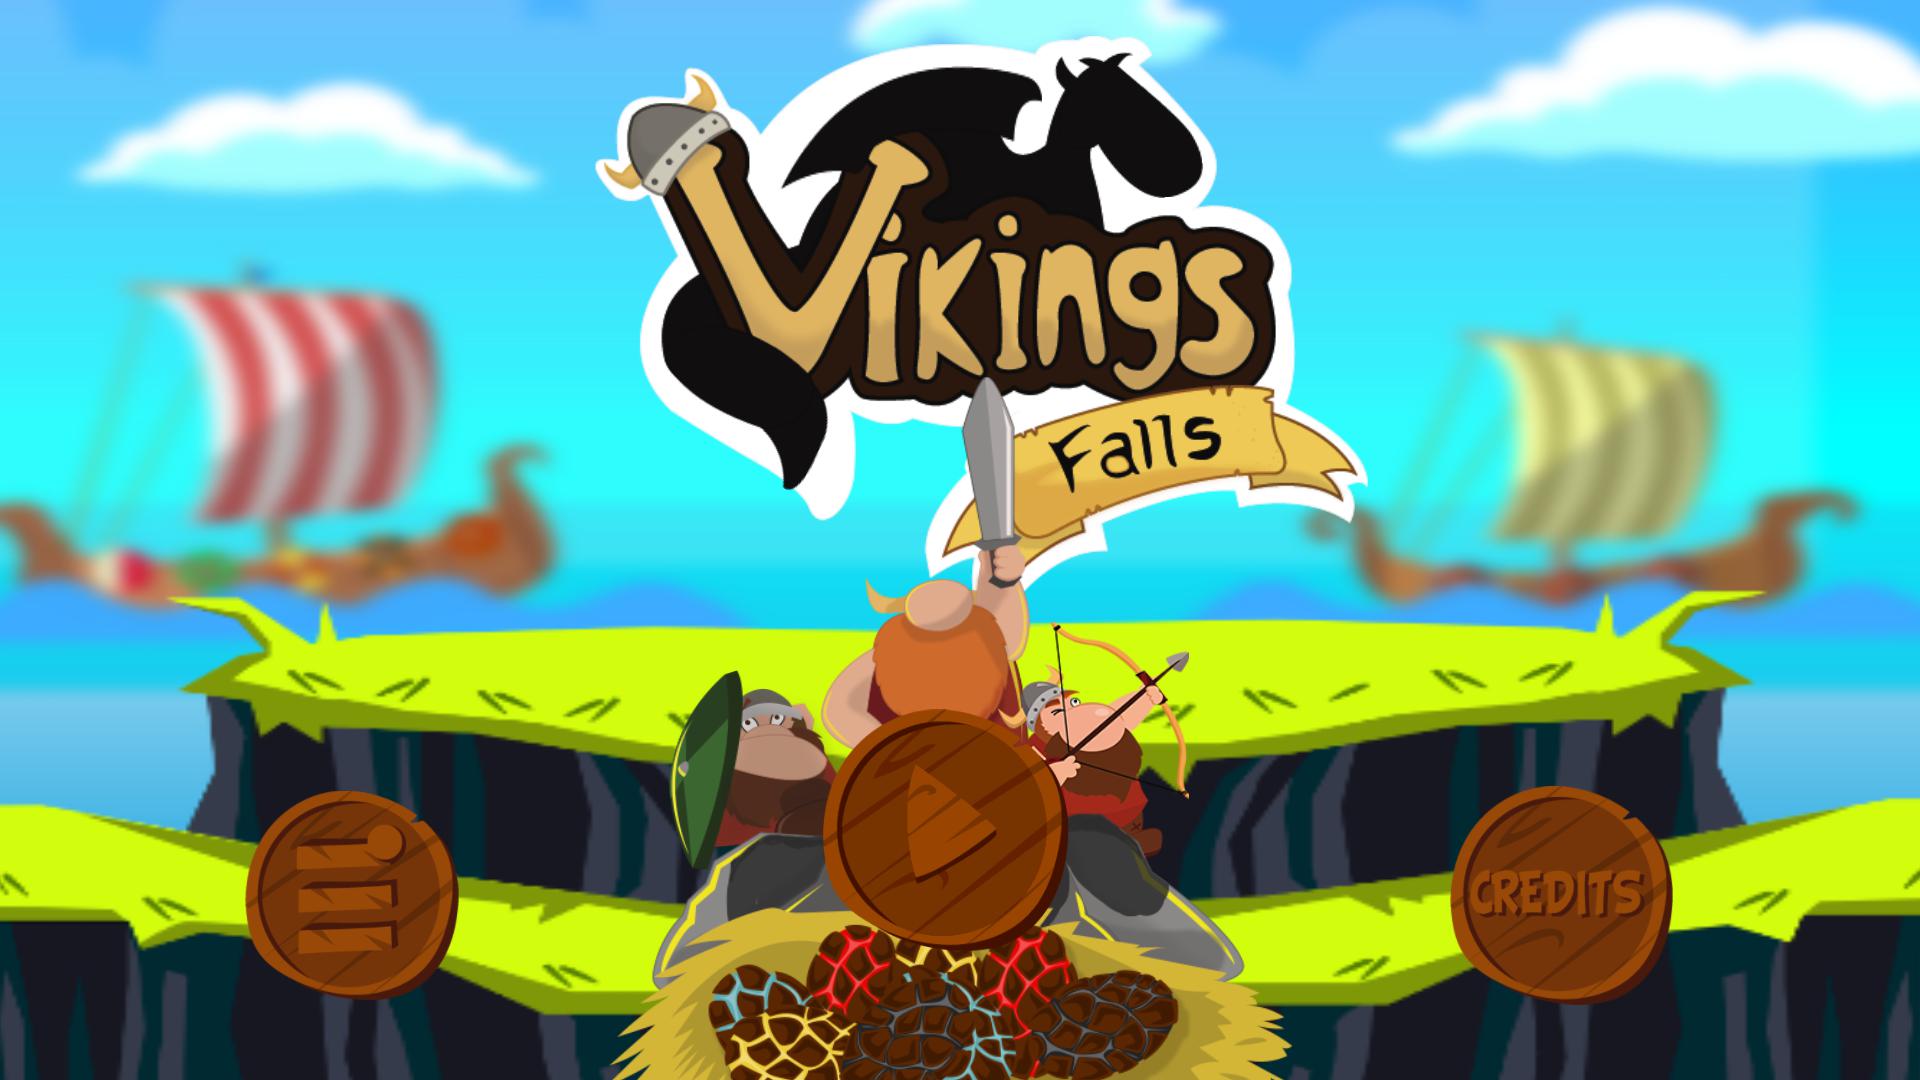 Vikings Falls